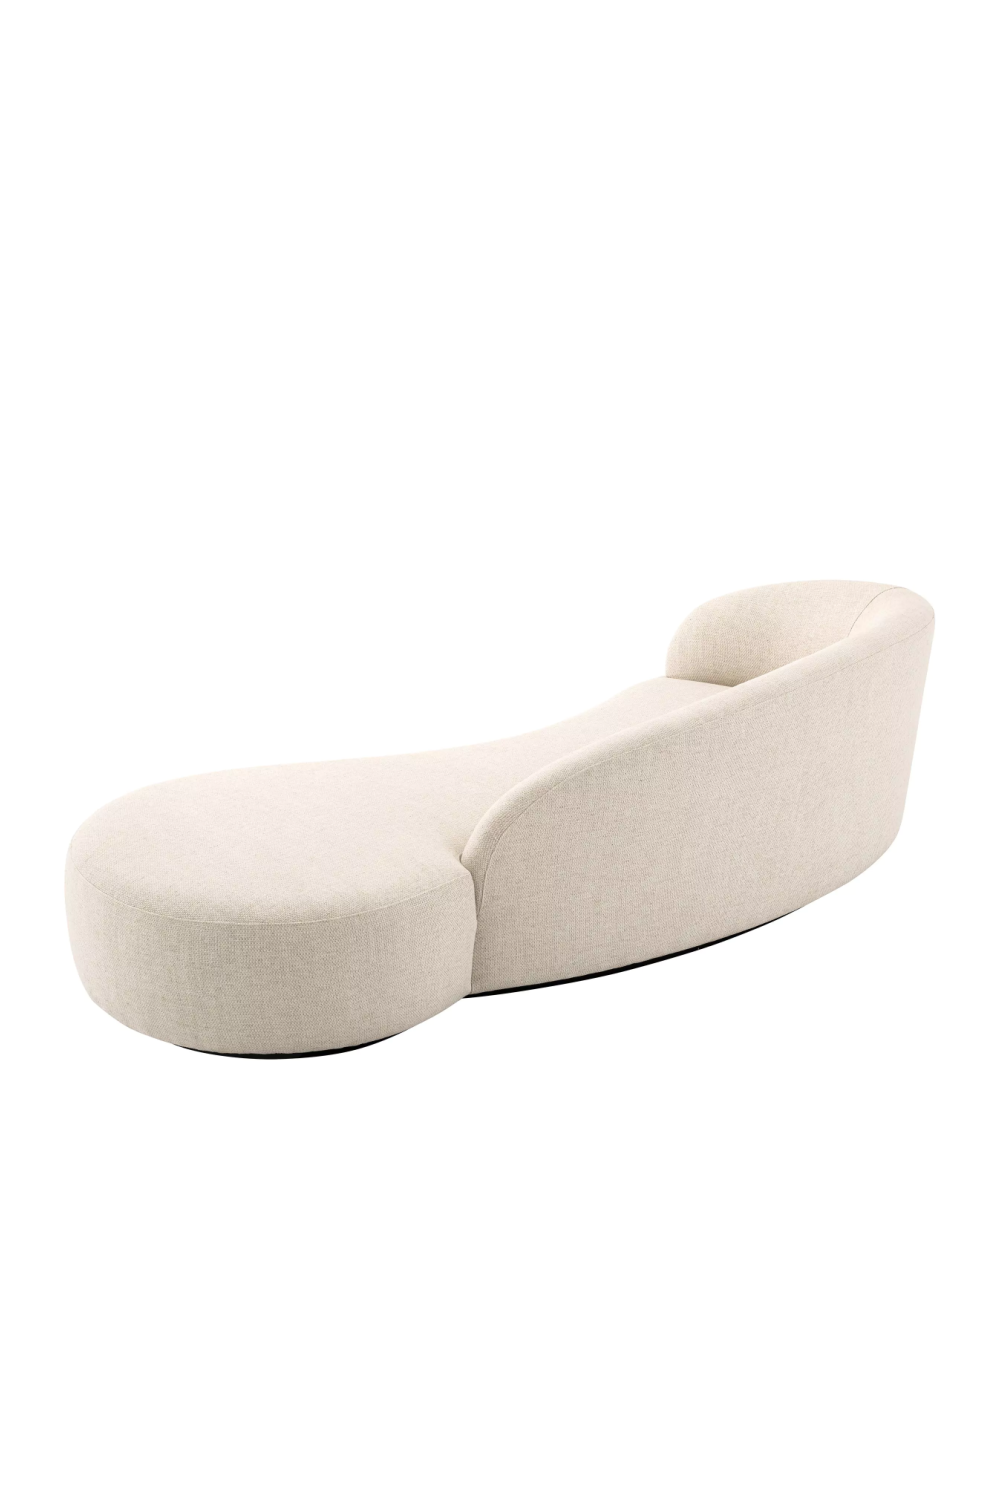 Modern Minimalist Curved Sofa | Eichholtz Bernd | Oroa.com